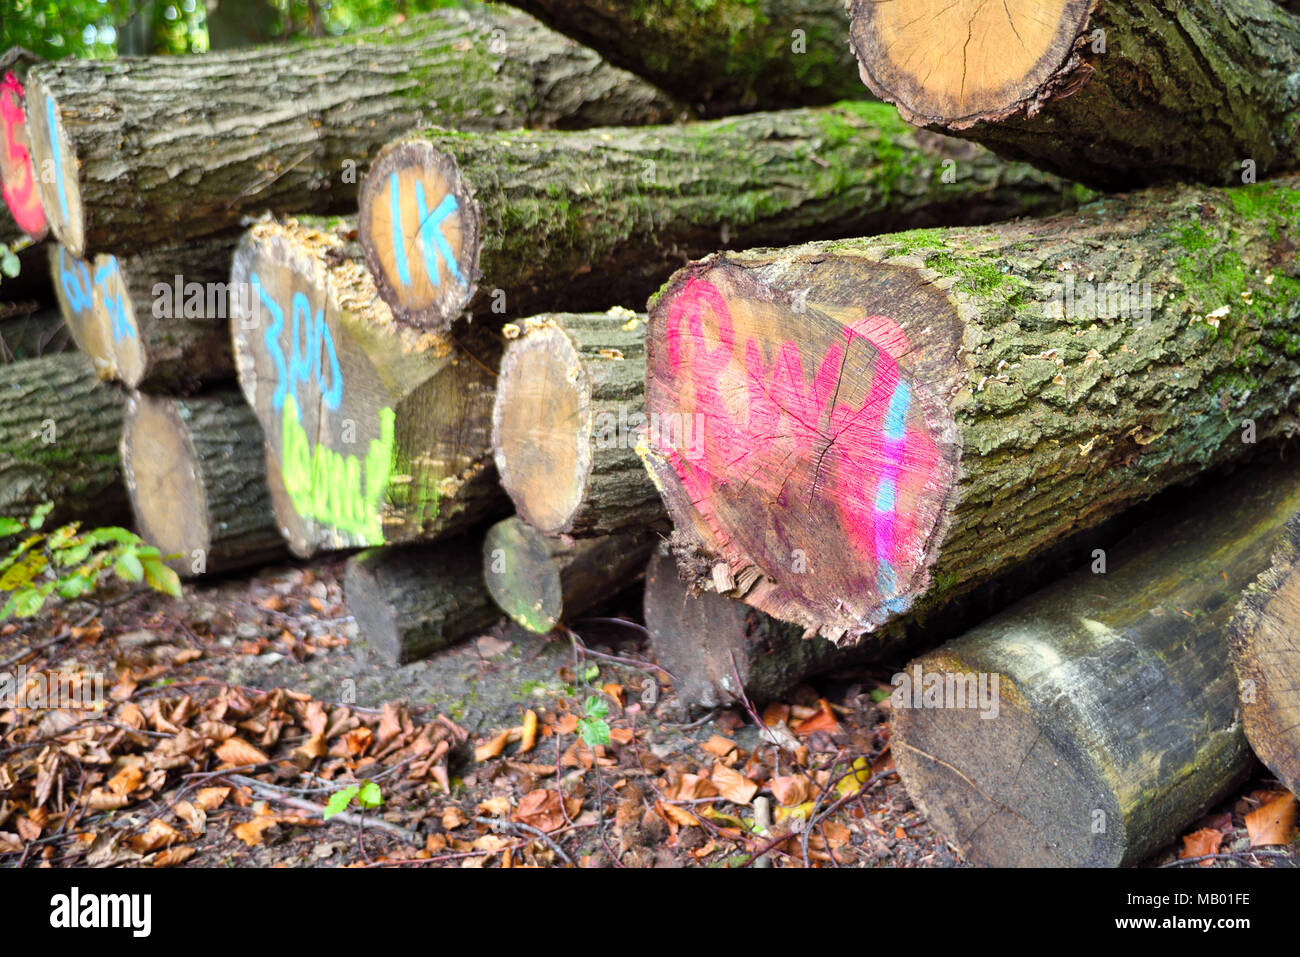 Los troncos de los árboles o pila de madera i un bosque. Industria maderera escena con trozos de madera apiladas. Foto de stock